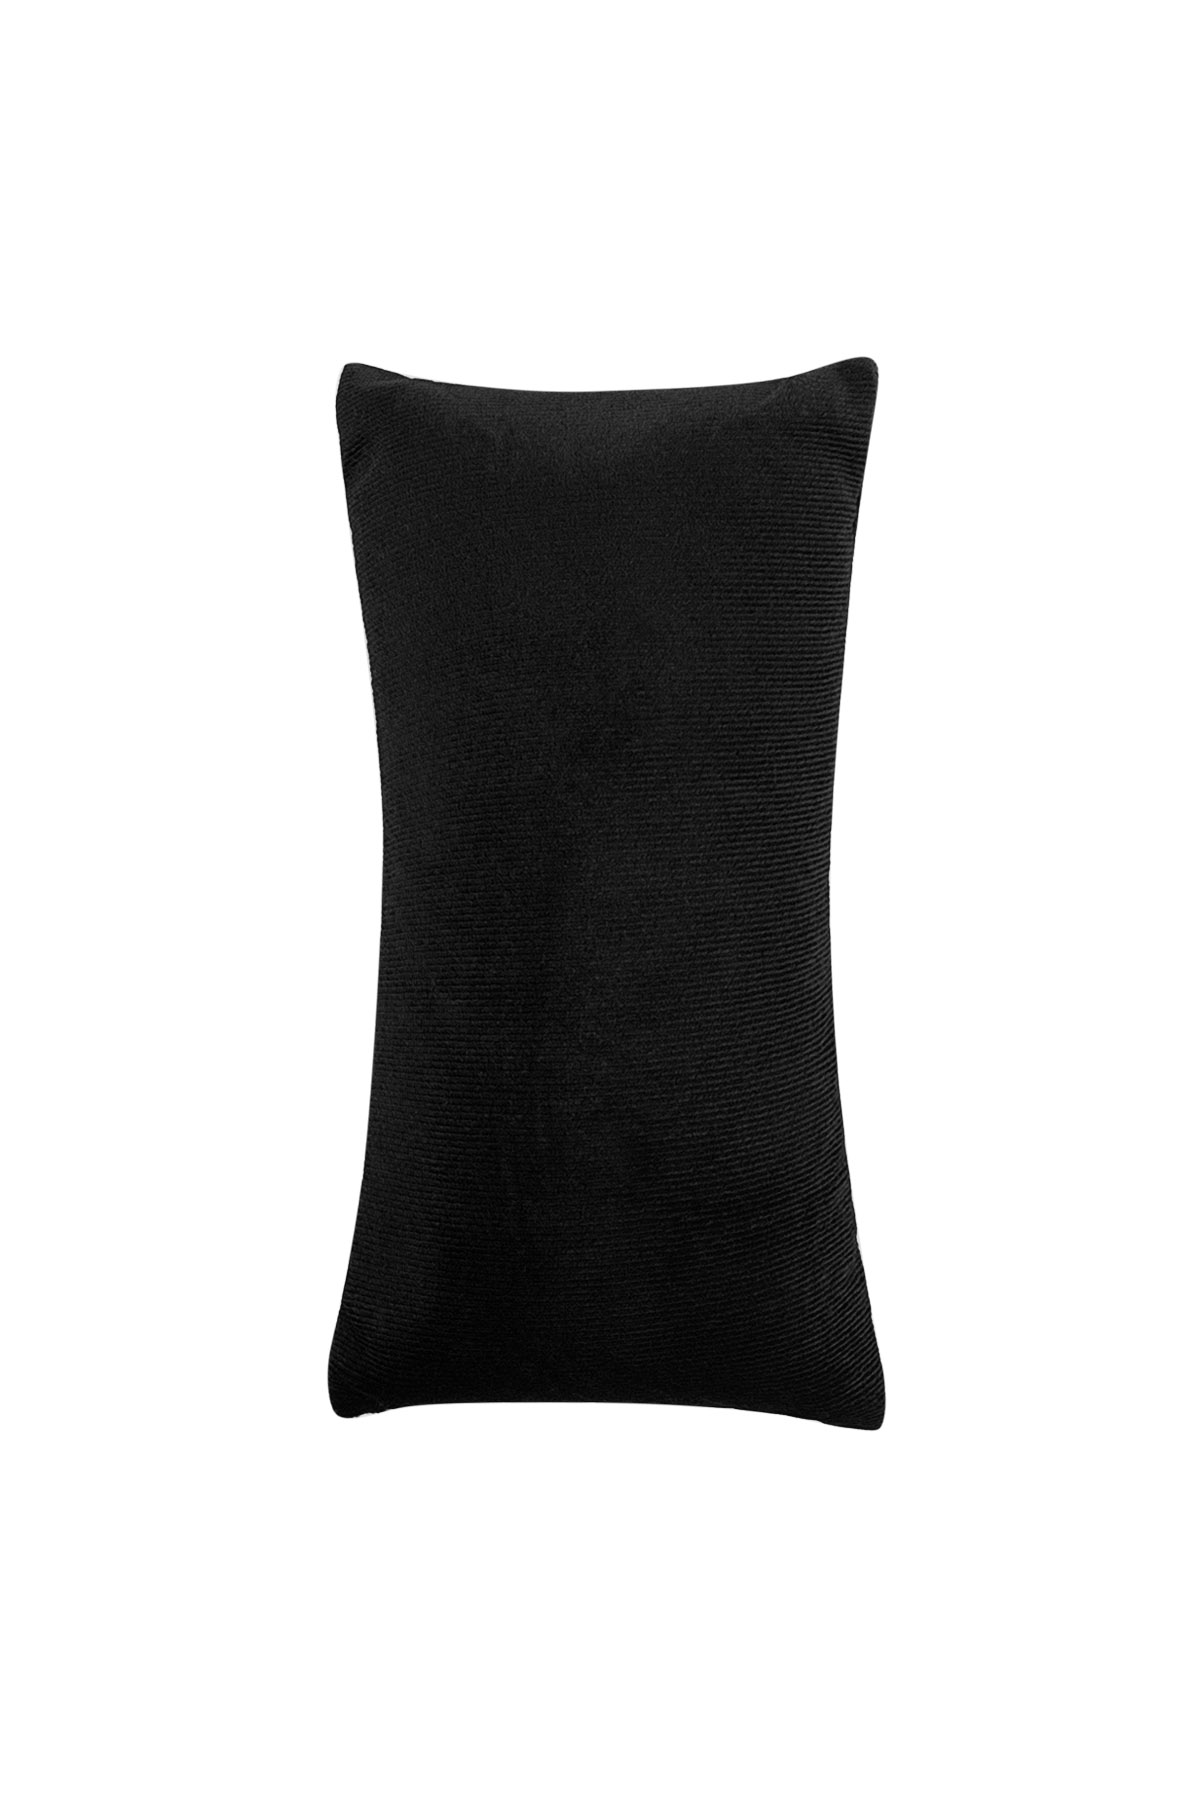 Basit bilezik yastık ekranı - siyah 